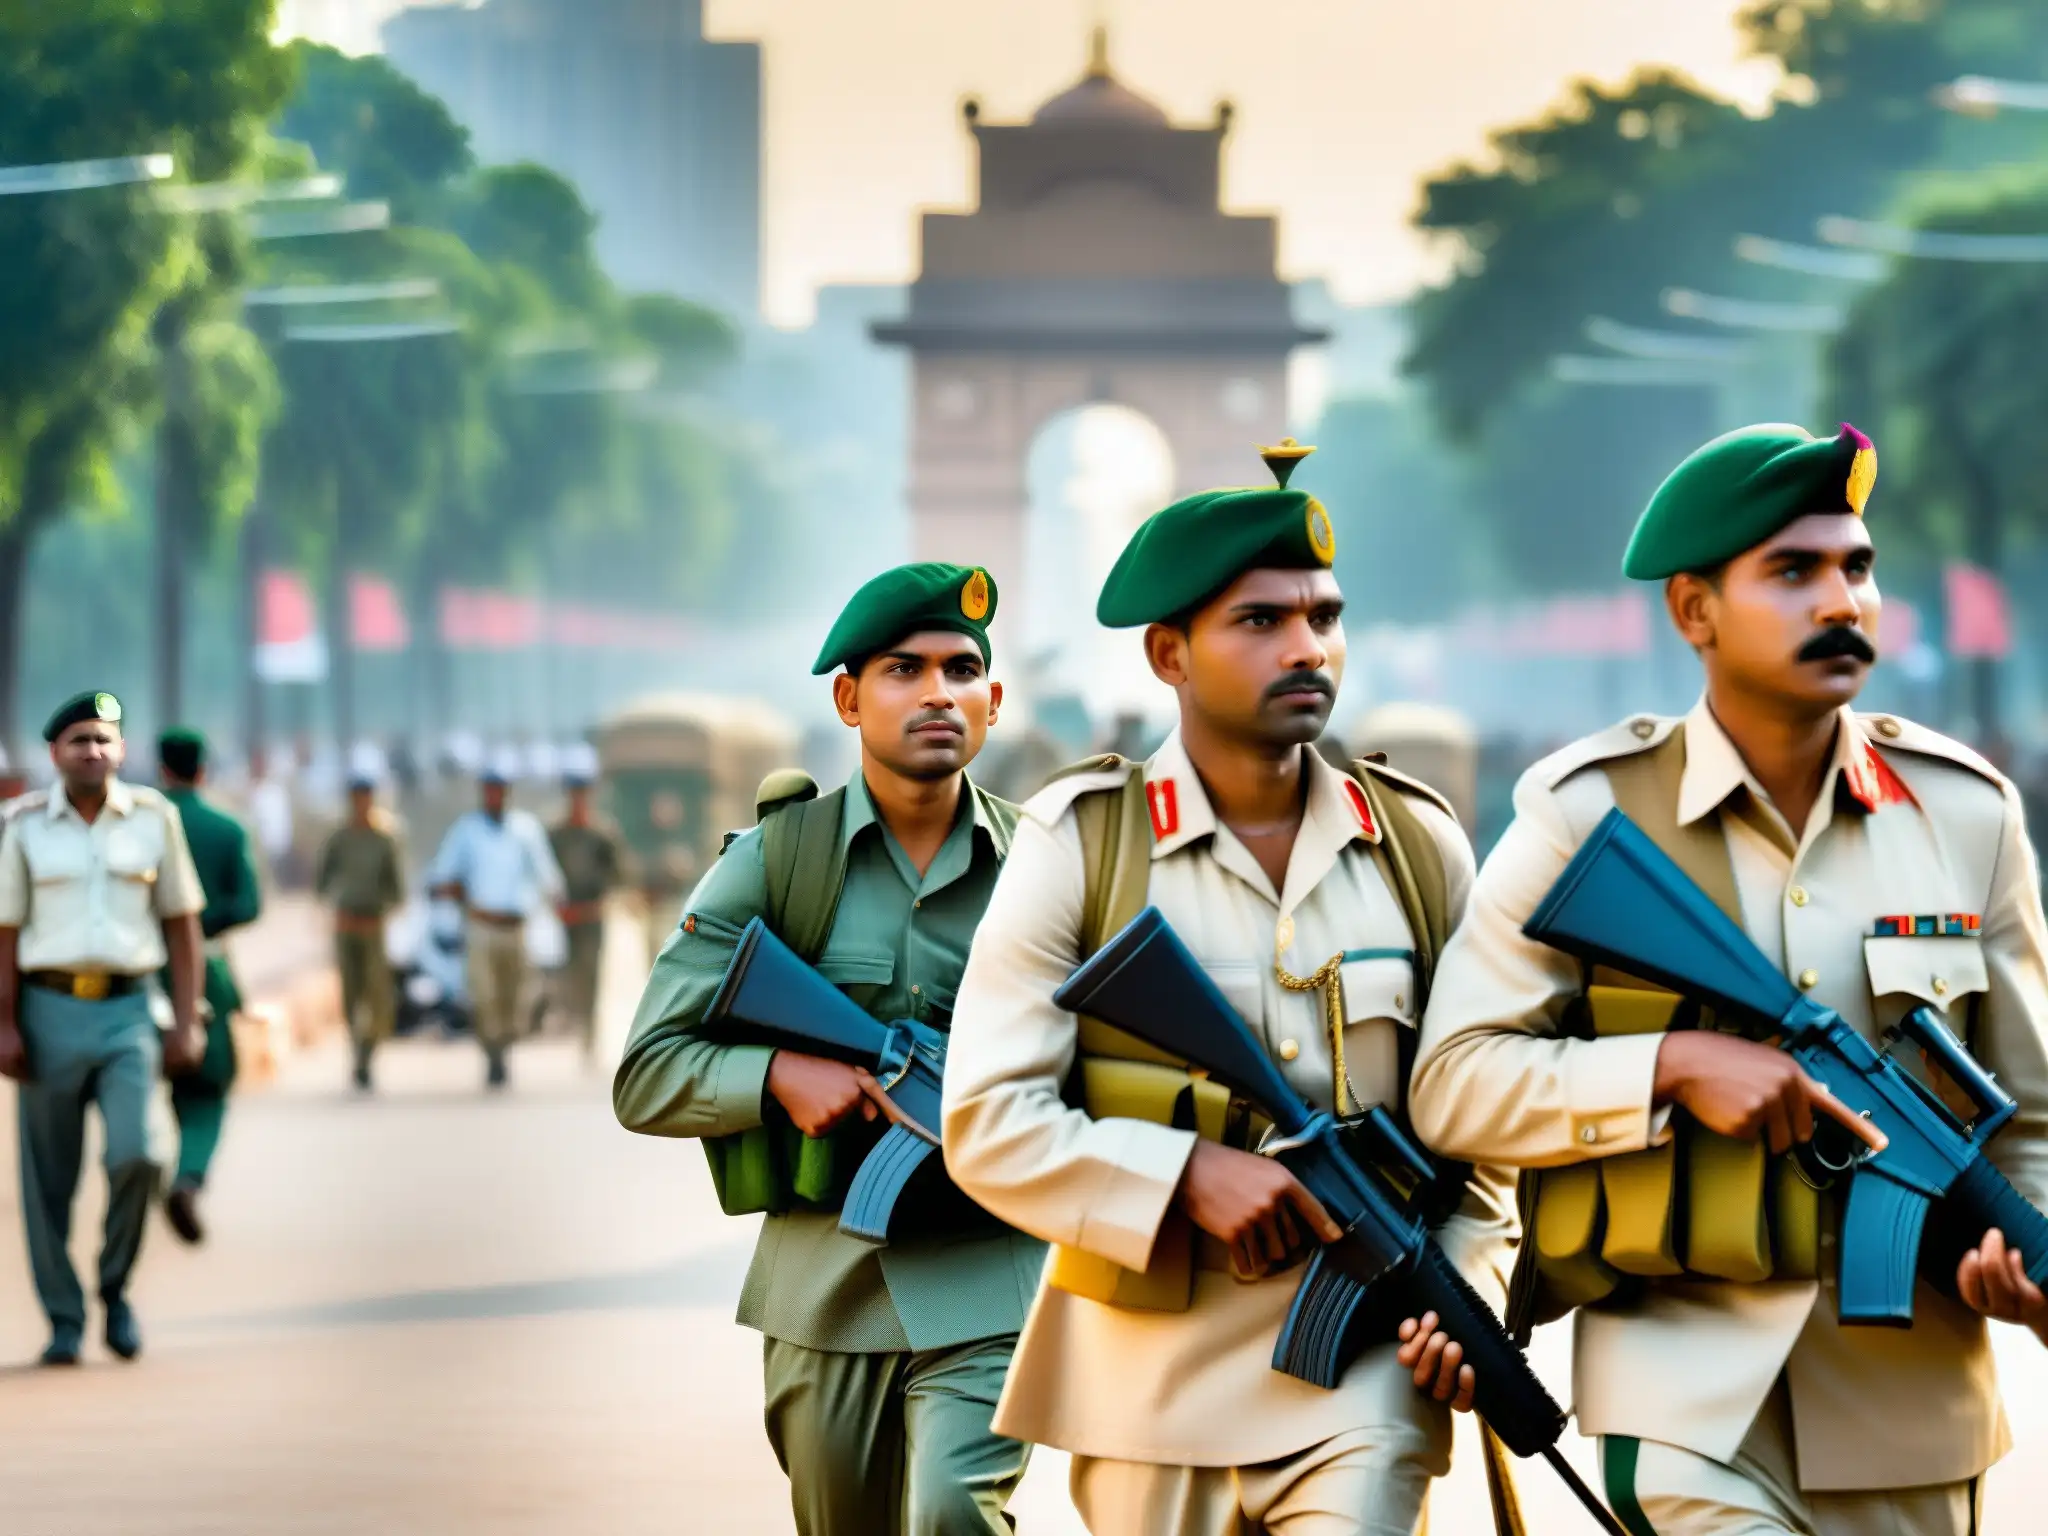 Un retrato de soldados indios en Delhi Cantonment, mostrando su espíritu mientras caminan por las concurridas calles